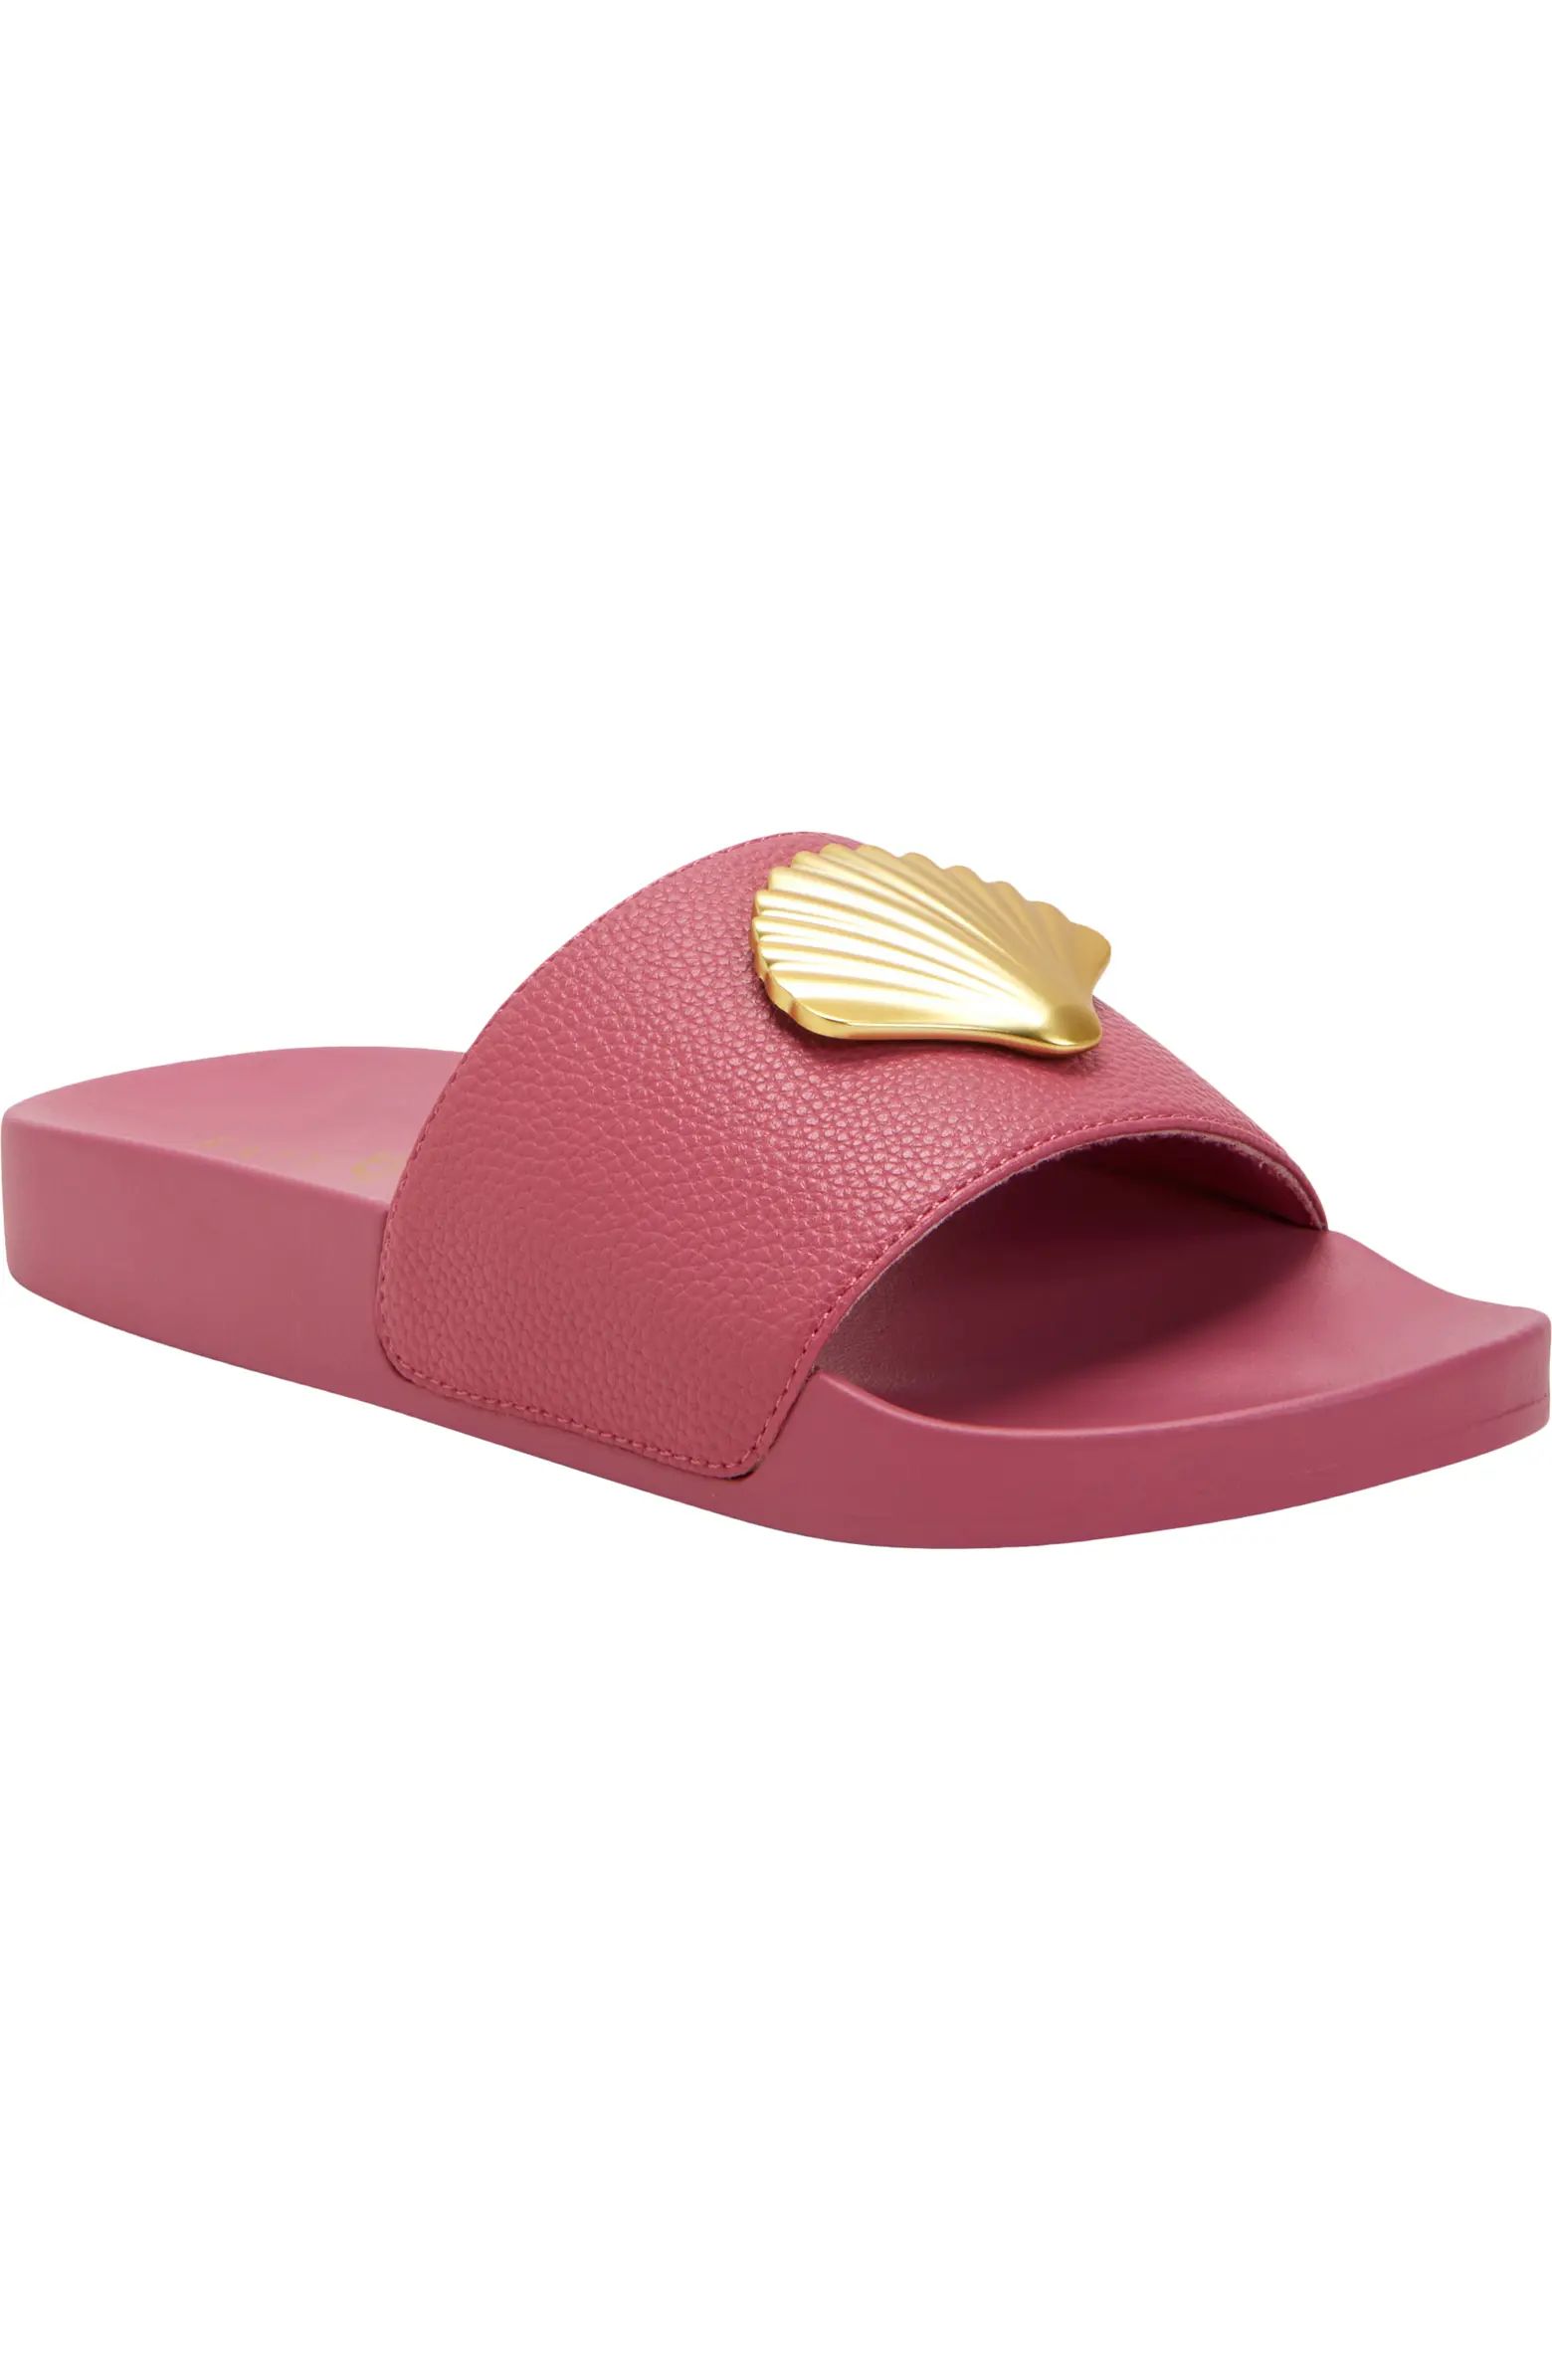 Katy Perry The Pool Shell Slide Sandal (Women) | Nordstrom | Nordstrom